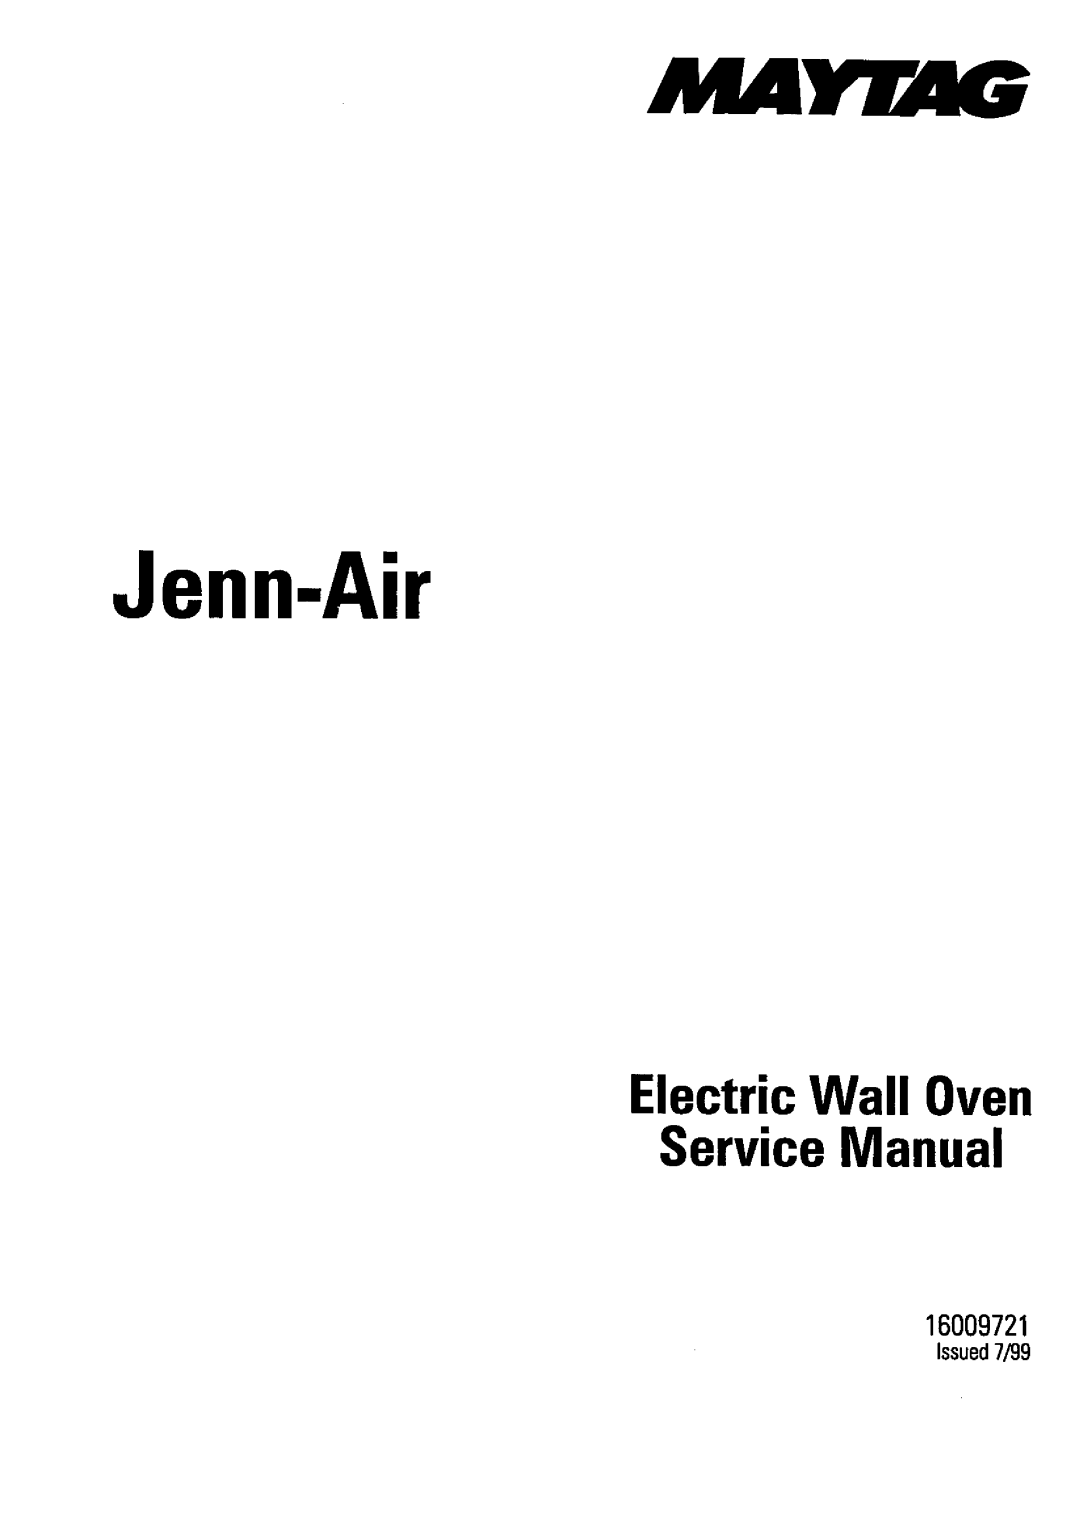 Jenn-Air JMW9530, JMW9527 warranty Electric Convection Wall Oven Guide, TableofContents, Models JJW9527, JJW9627, JJW9530 